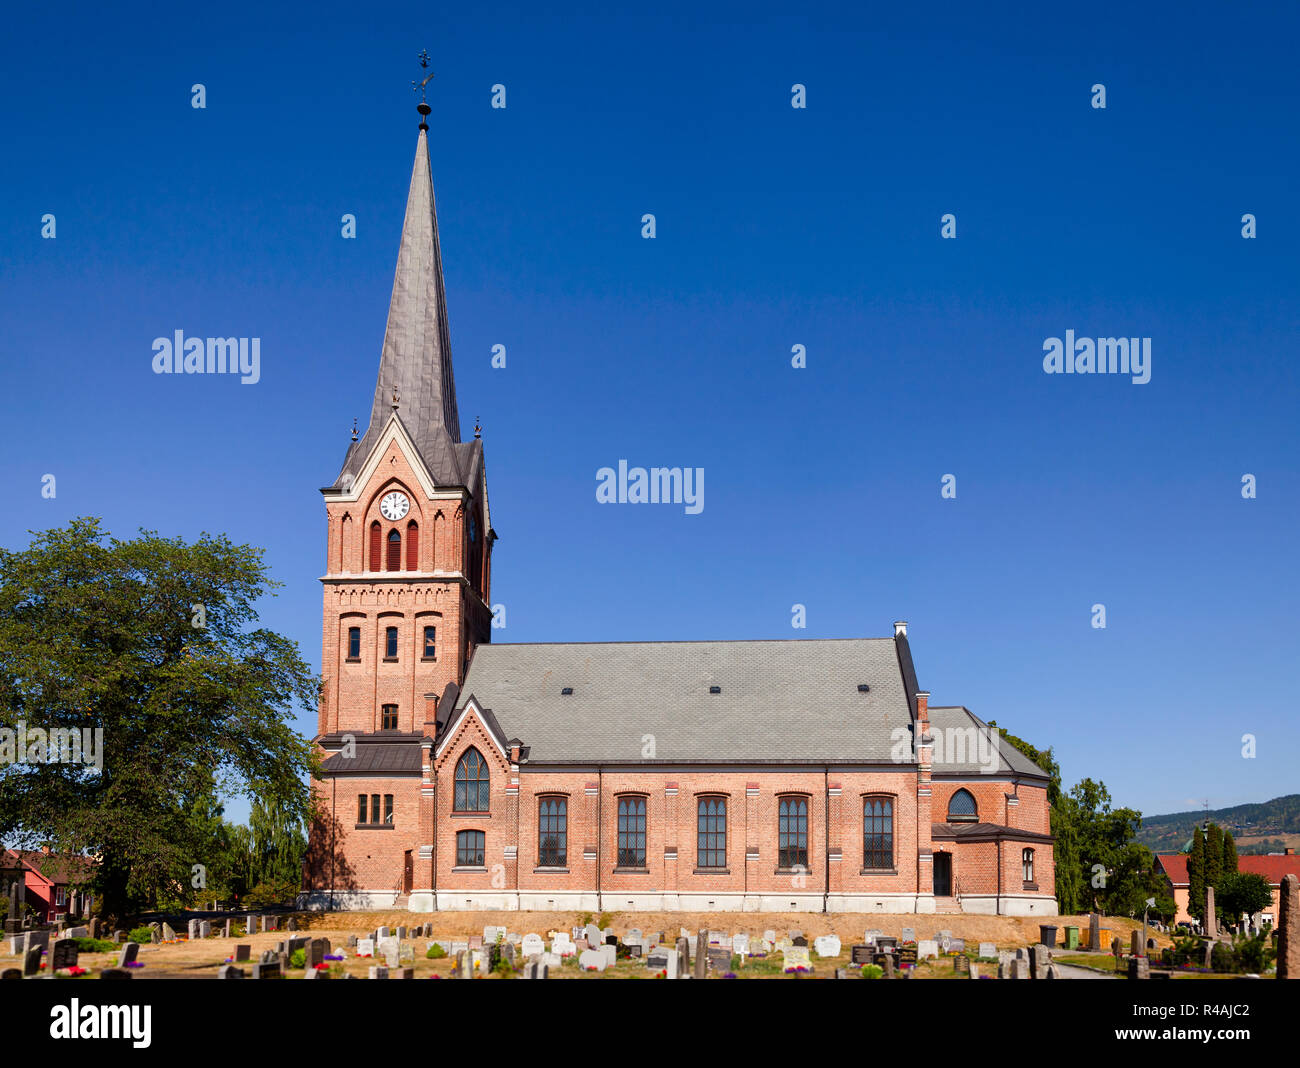 En brique rouge de style néogothique de l'Église (Lillehammer Lillehammer Oppland Norvège Kirke) Banque D'Images